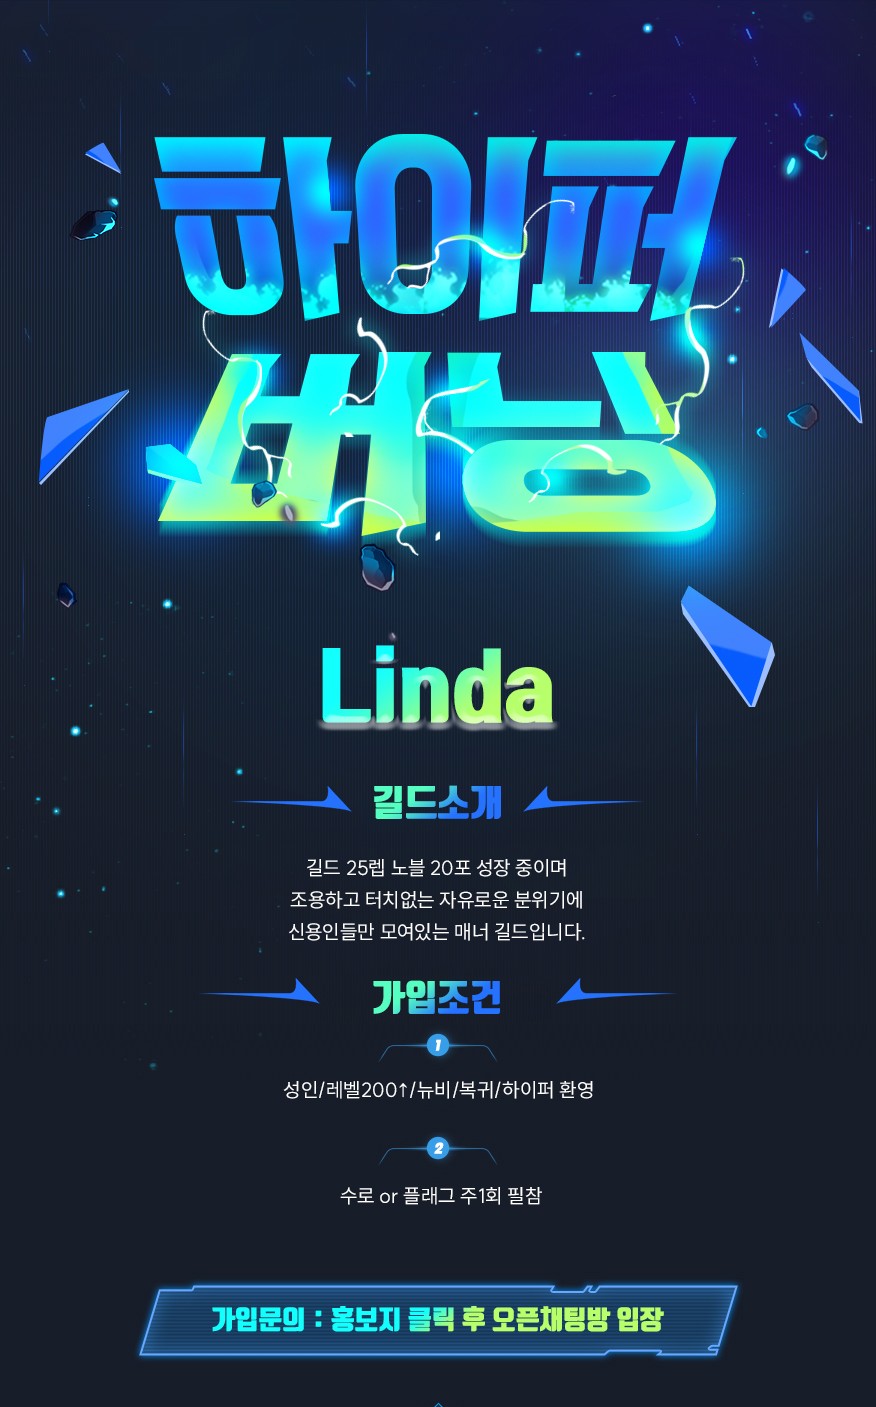 [소식][루나] ▶신생 길드 Linda 조용한 길드원 모집◀ -cboard